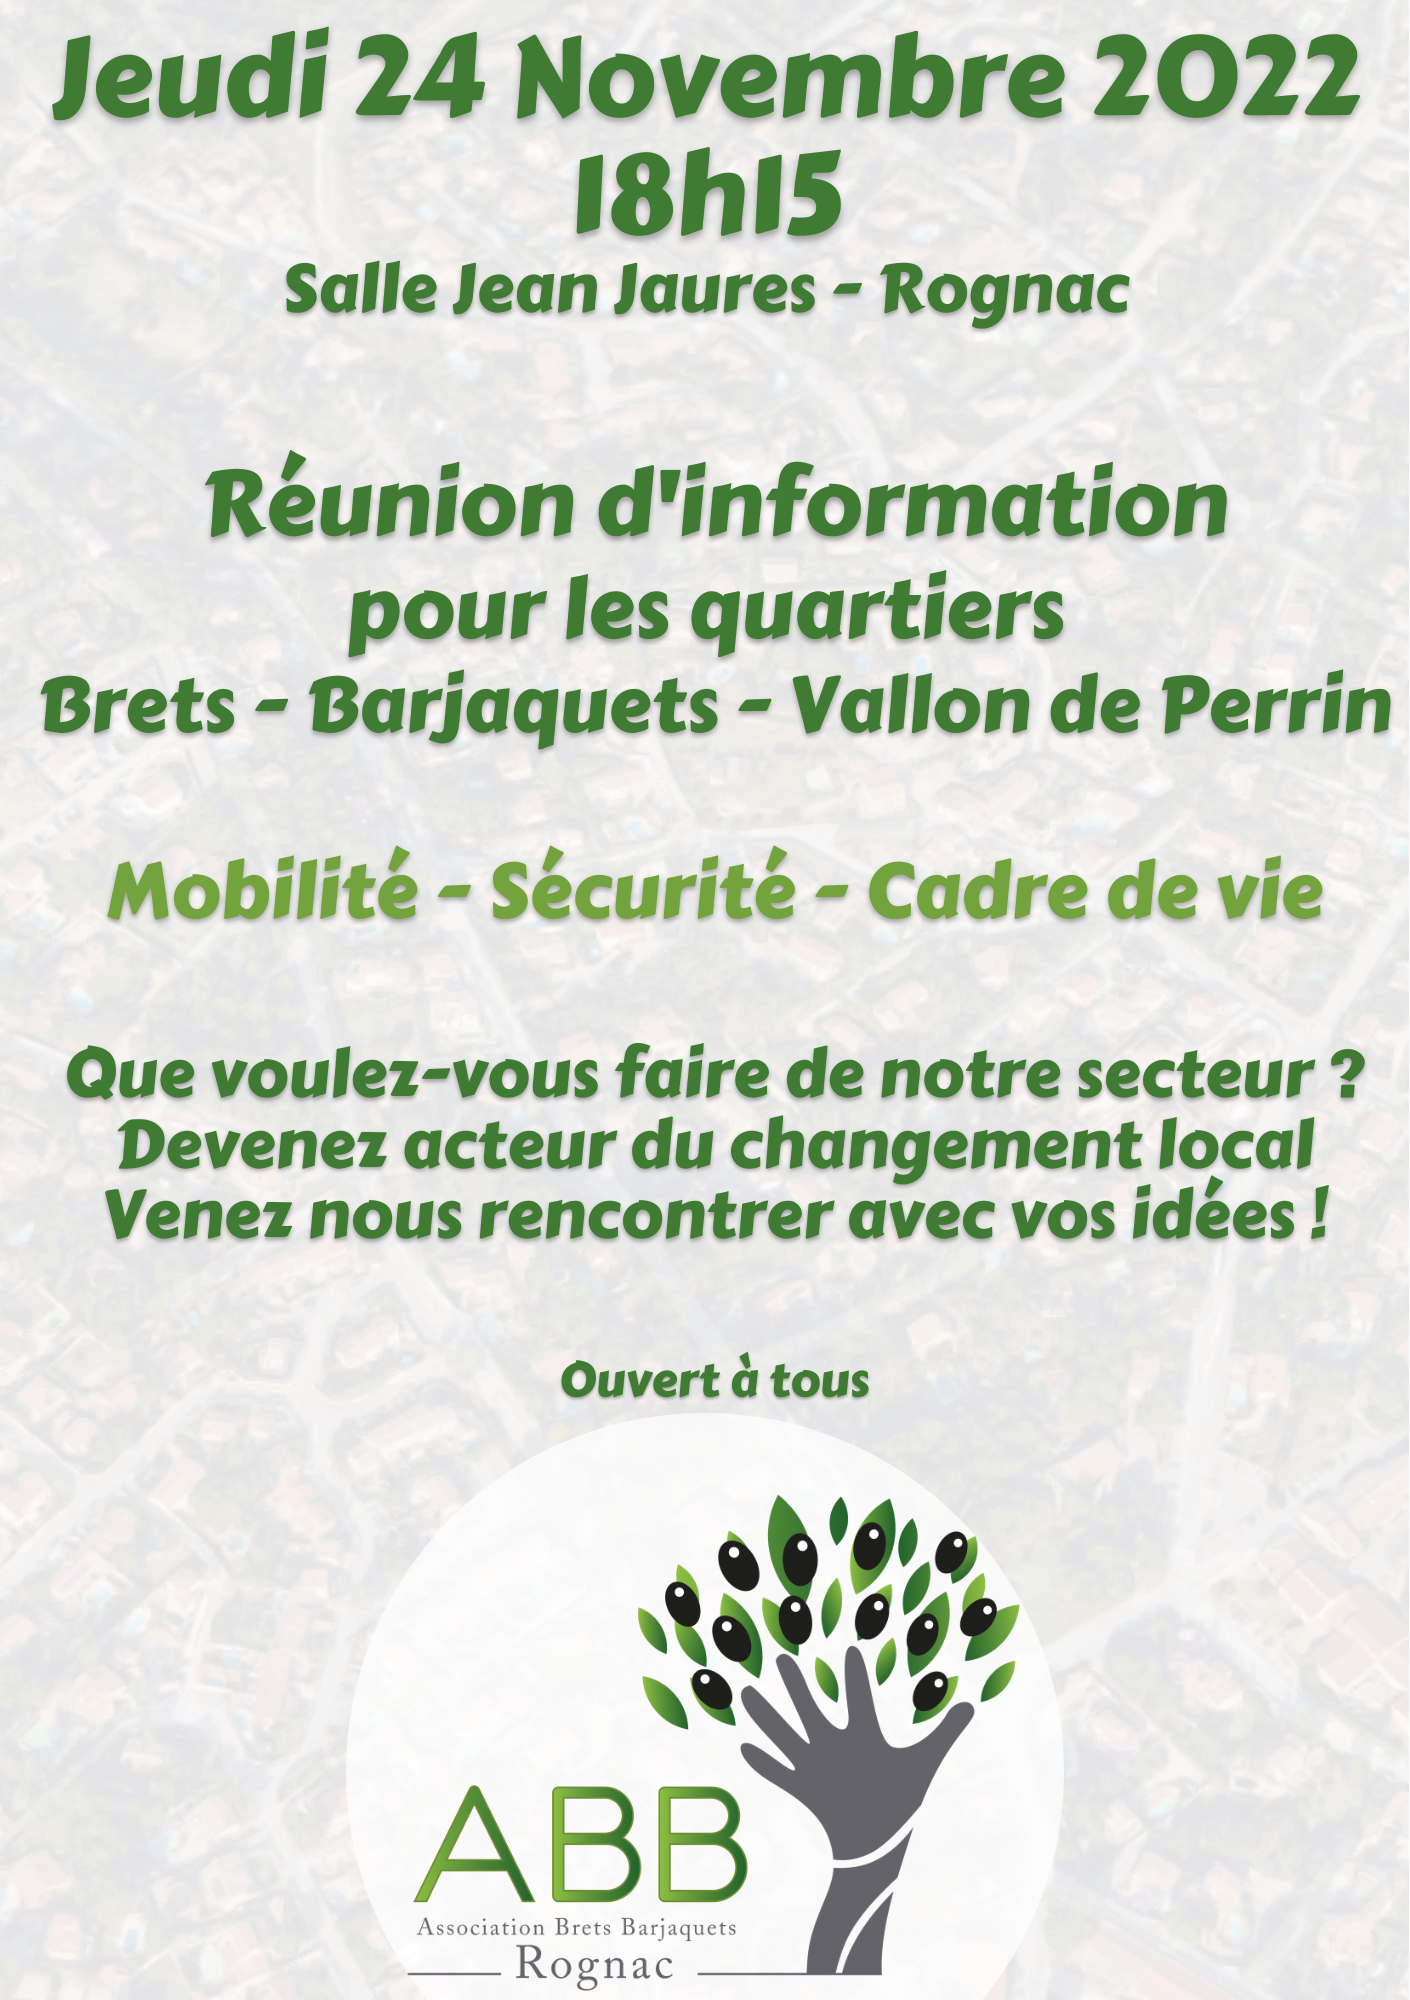 You are currently viewing Réunion d’information 24 Novembre 2022 à 18h15 salle Jean Jaurès à Rognac.